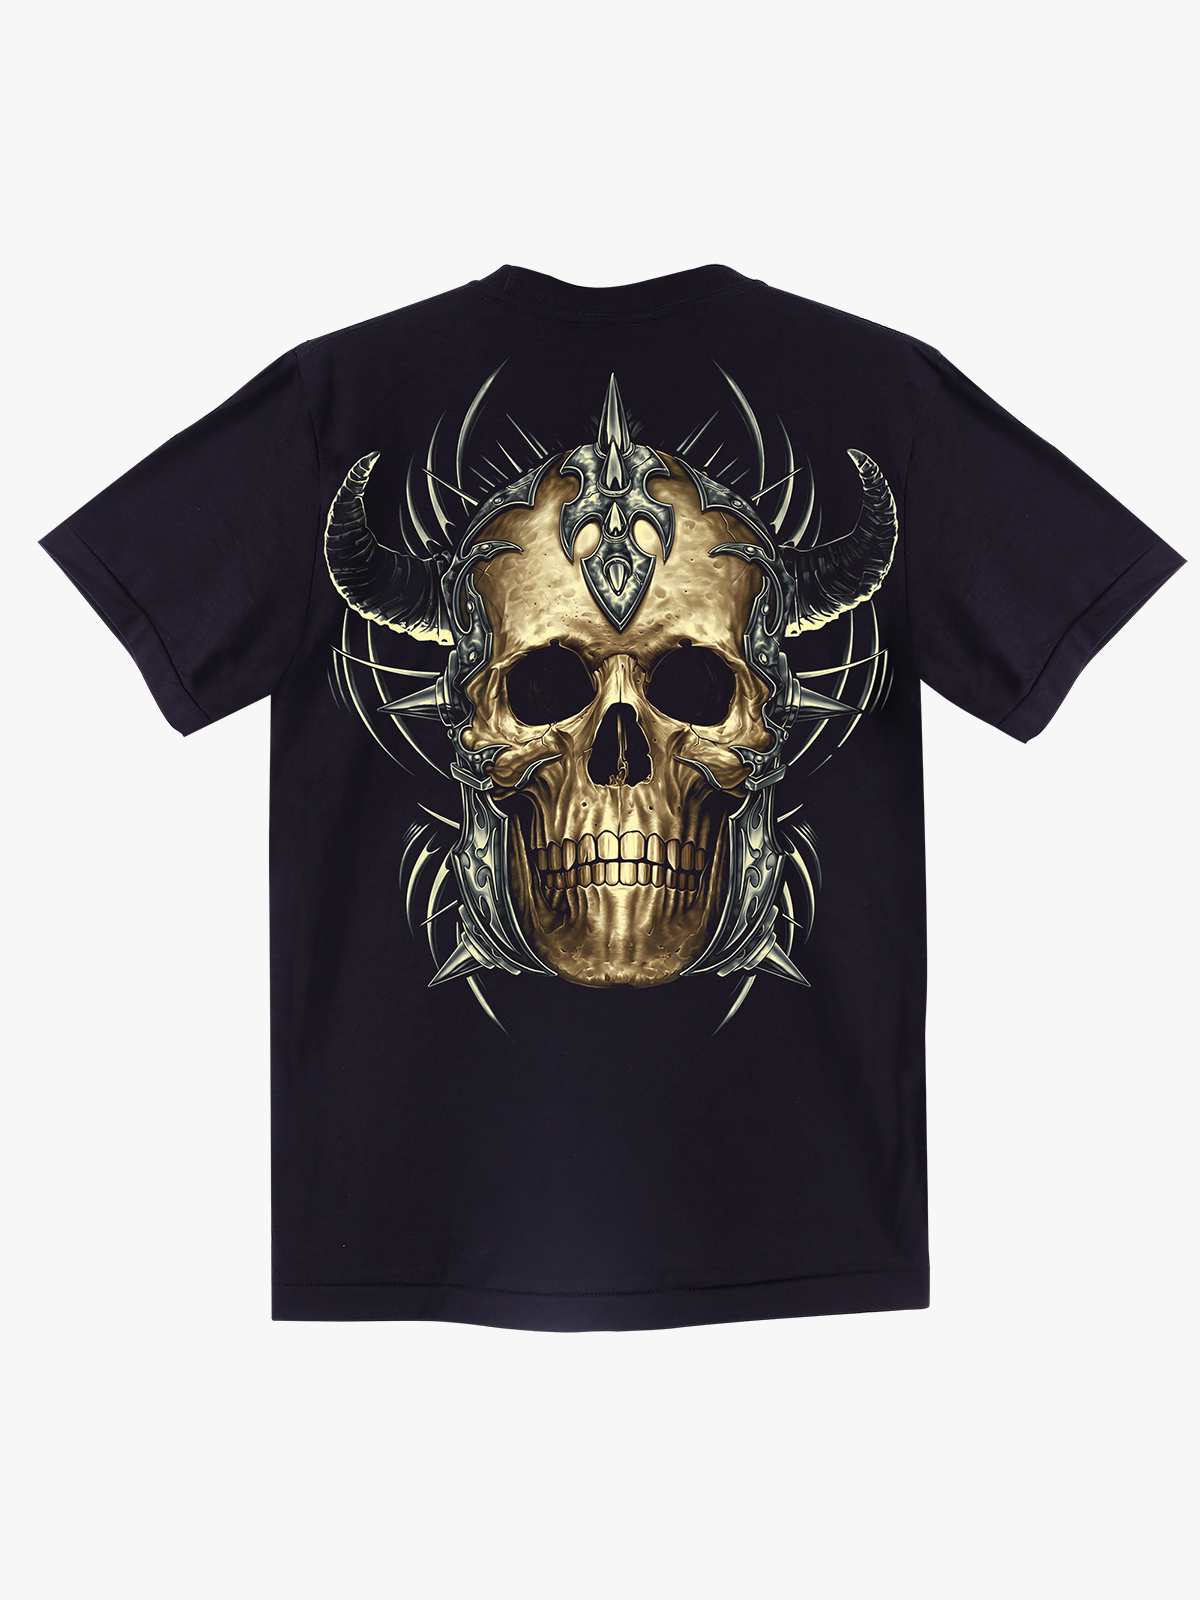 GW 042 – Rock Eagle T-Shirts – Official Site